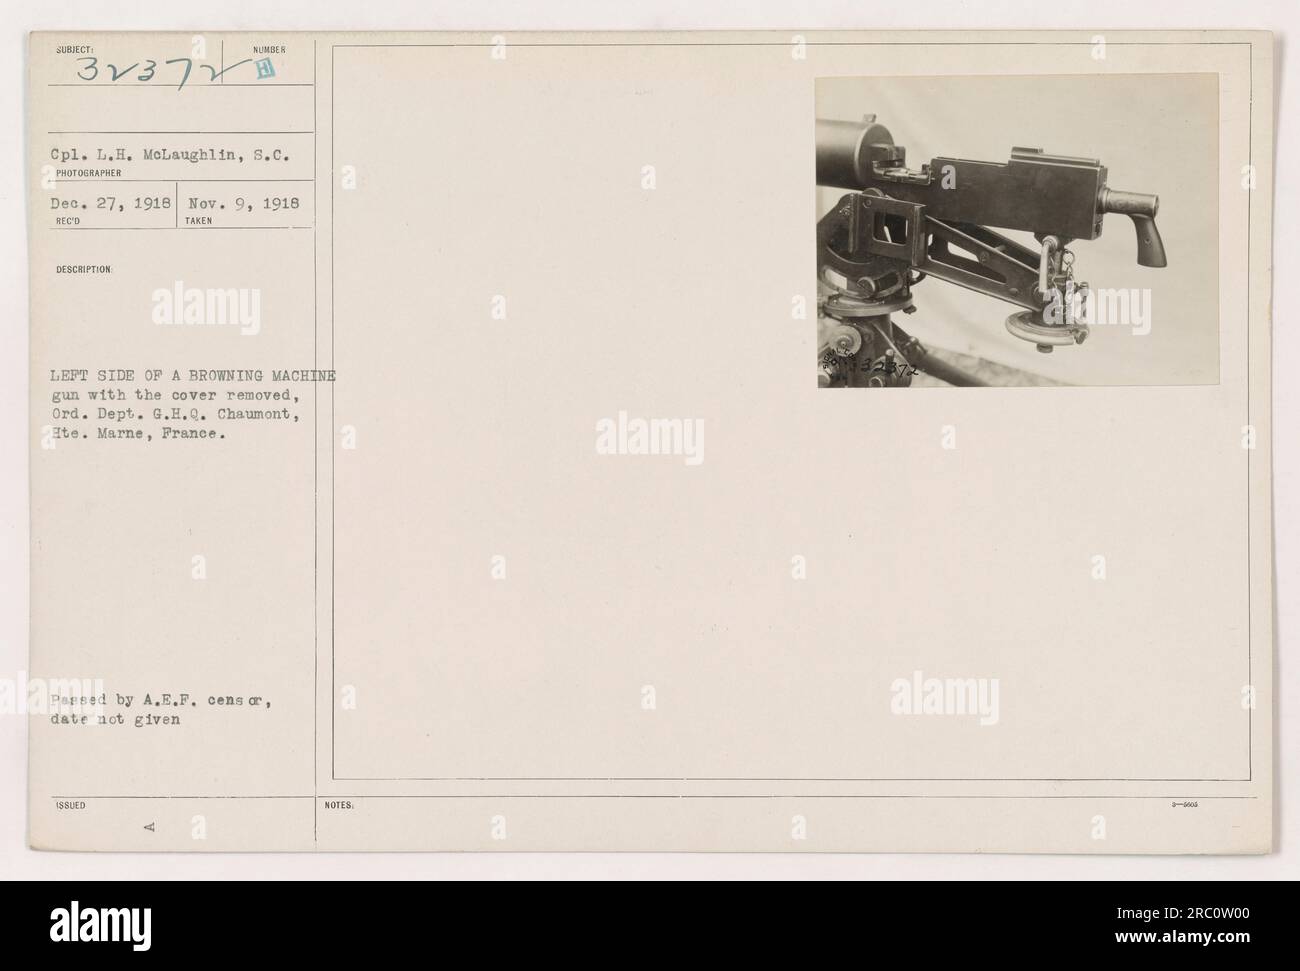 CPL. L.H. McLaughlin, Carolina del Sur, fotografió el lado izquierdo de una ametralladora Browning con su cubierta quitada en el Ord. Dpto. G.H.Q. Chaumont, Ete. Marne, Francia el 9 de noviembre de 1918. La fotografía fue procesada por censores de A.E.P. y se tomó una descripción detallada. Foto de stock